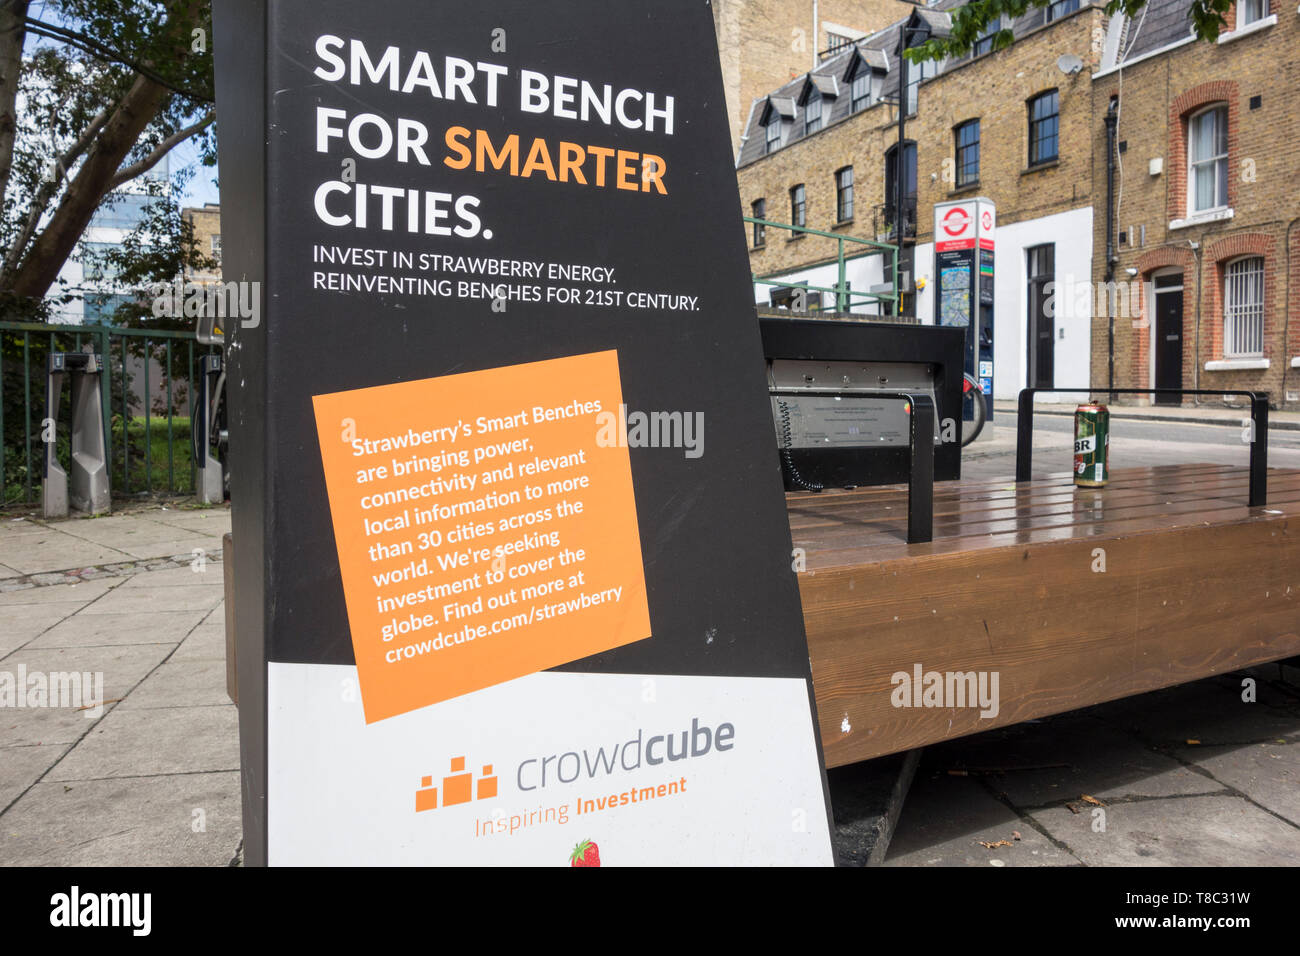 L'énergie de fraise Banc Smart pour les villes plus intelligentes sur une rue à Southwark, Londres, UK Banque D'Images